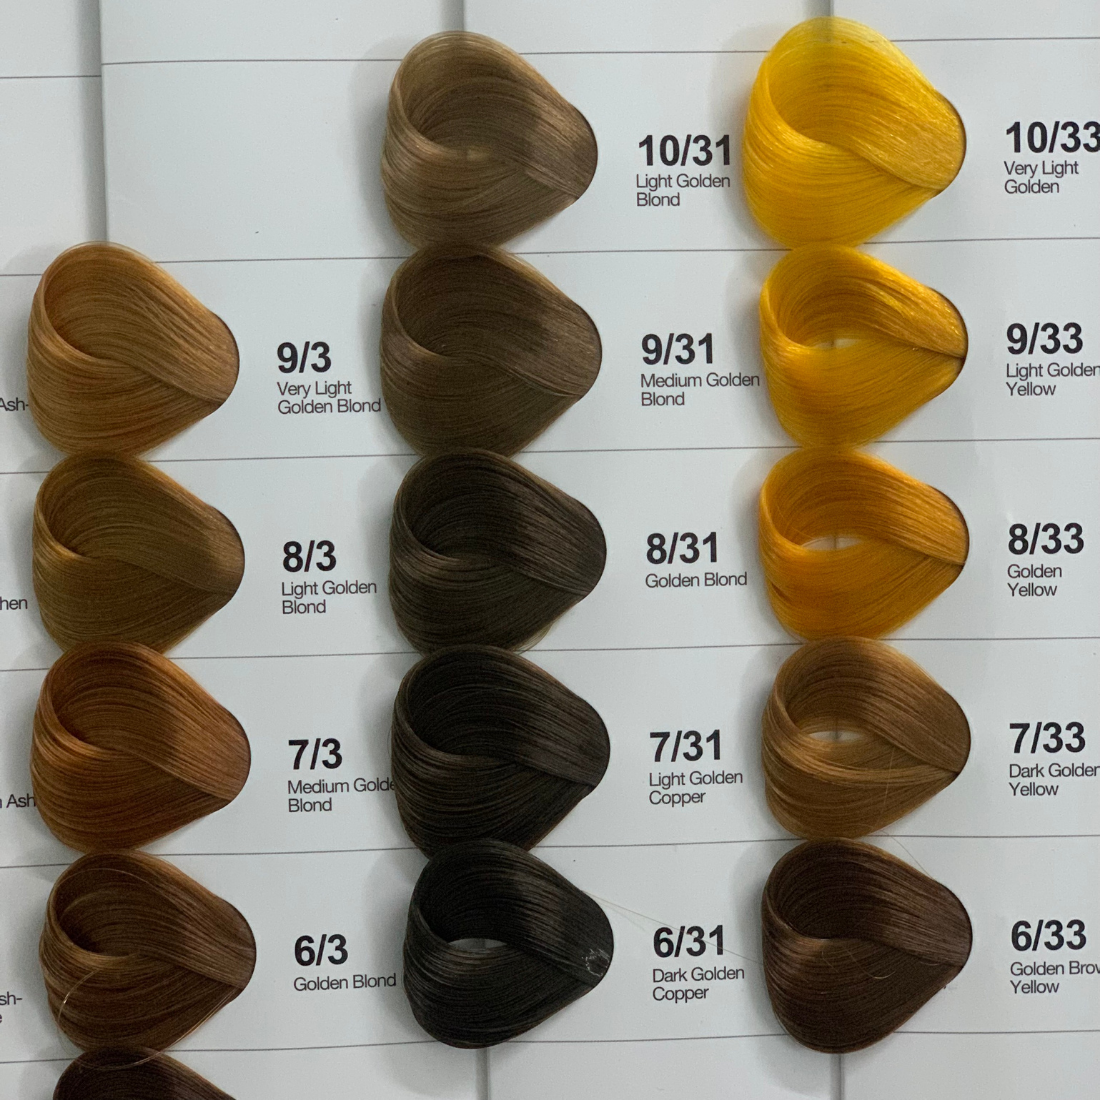 Mã màu: Để nâng cao chất lượng nhuộm tóc của bạn, chúng tôi sử dụng các mã màu hiện đại và chính xác nhất. Với hệ thống mã màu độc quyền của chúng tôi, bạn có thể tìm thấy được màu tóc ưng ý nhất.